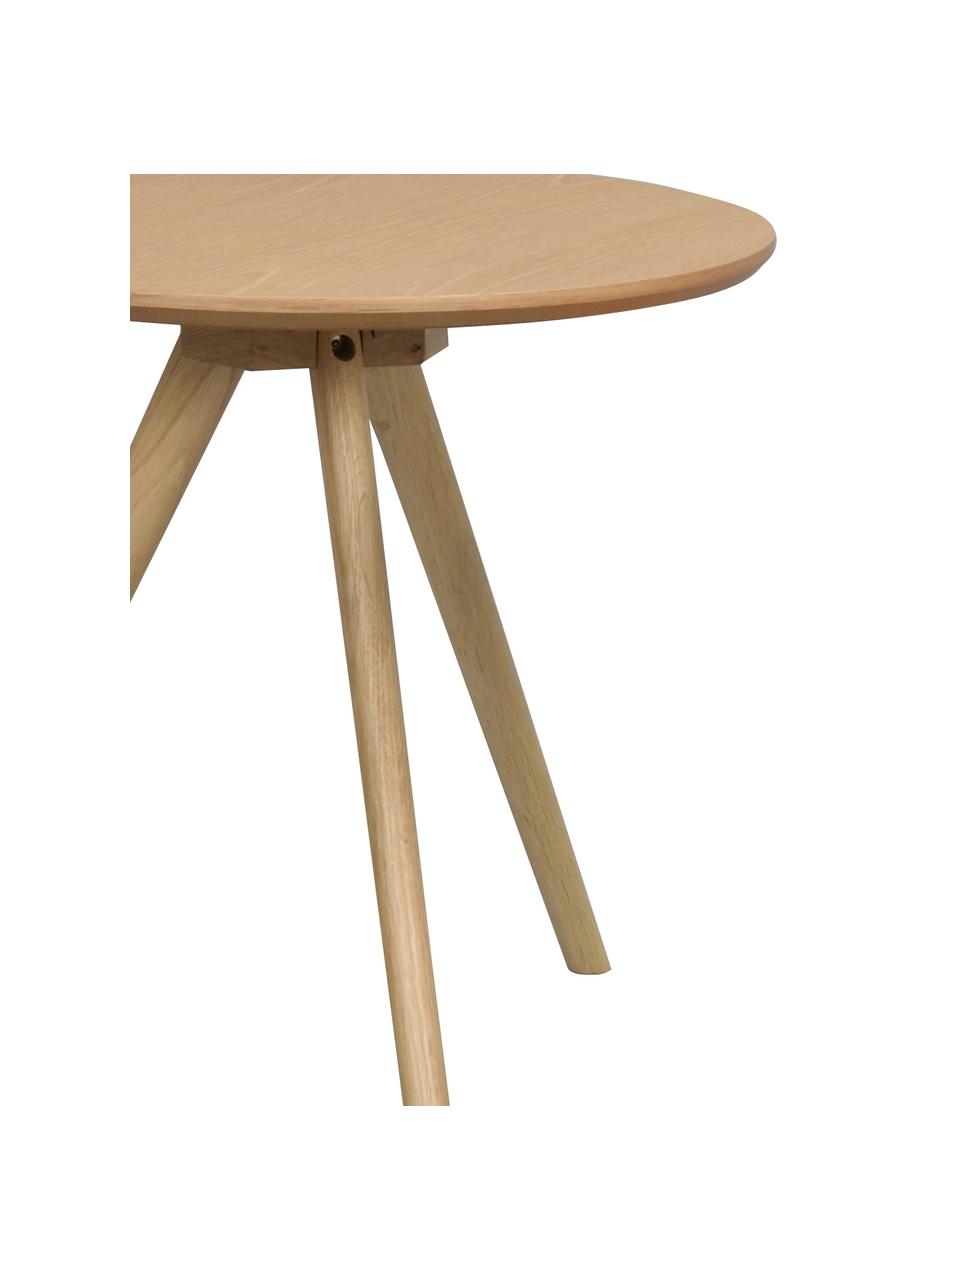 Set de mesas auxiliares Yumi, 2 uds., Tablero: fibras de densidad media , Patas: madera de roble maciza, Beige, Set de diferentes tamaños